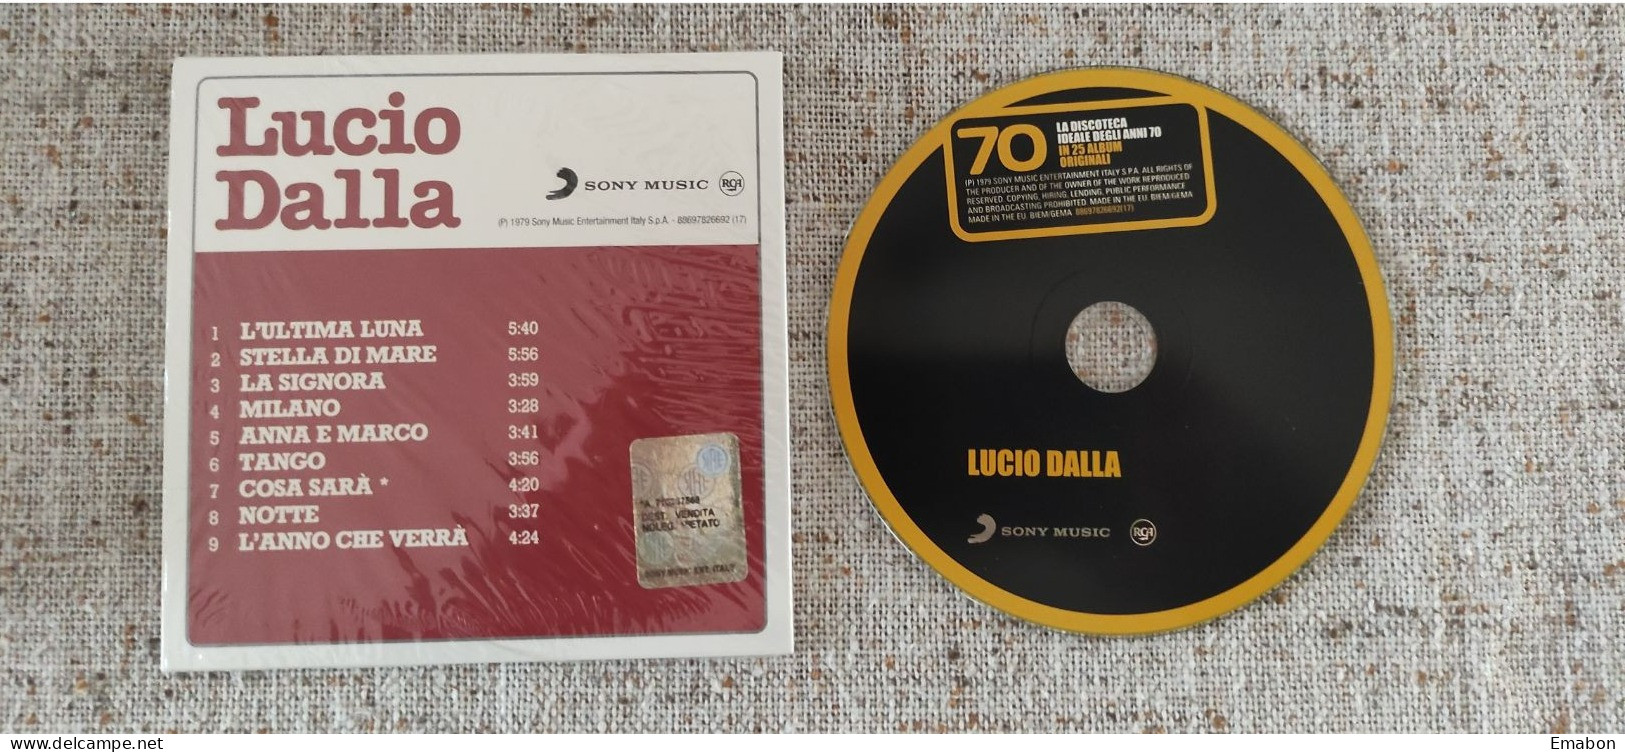 BORGATTA - ITALIANA  - Cd LUCIO DALLA  - LUCIO DALLA - SONY MUSIC 1979 -  USATO In Buono Stato - Sonstige - Italienische Musik